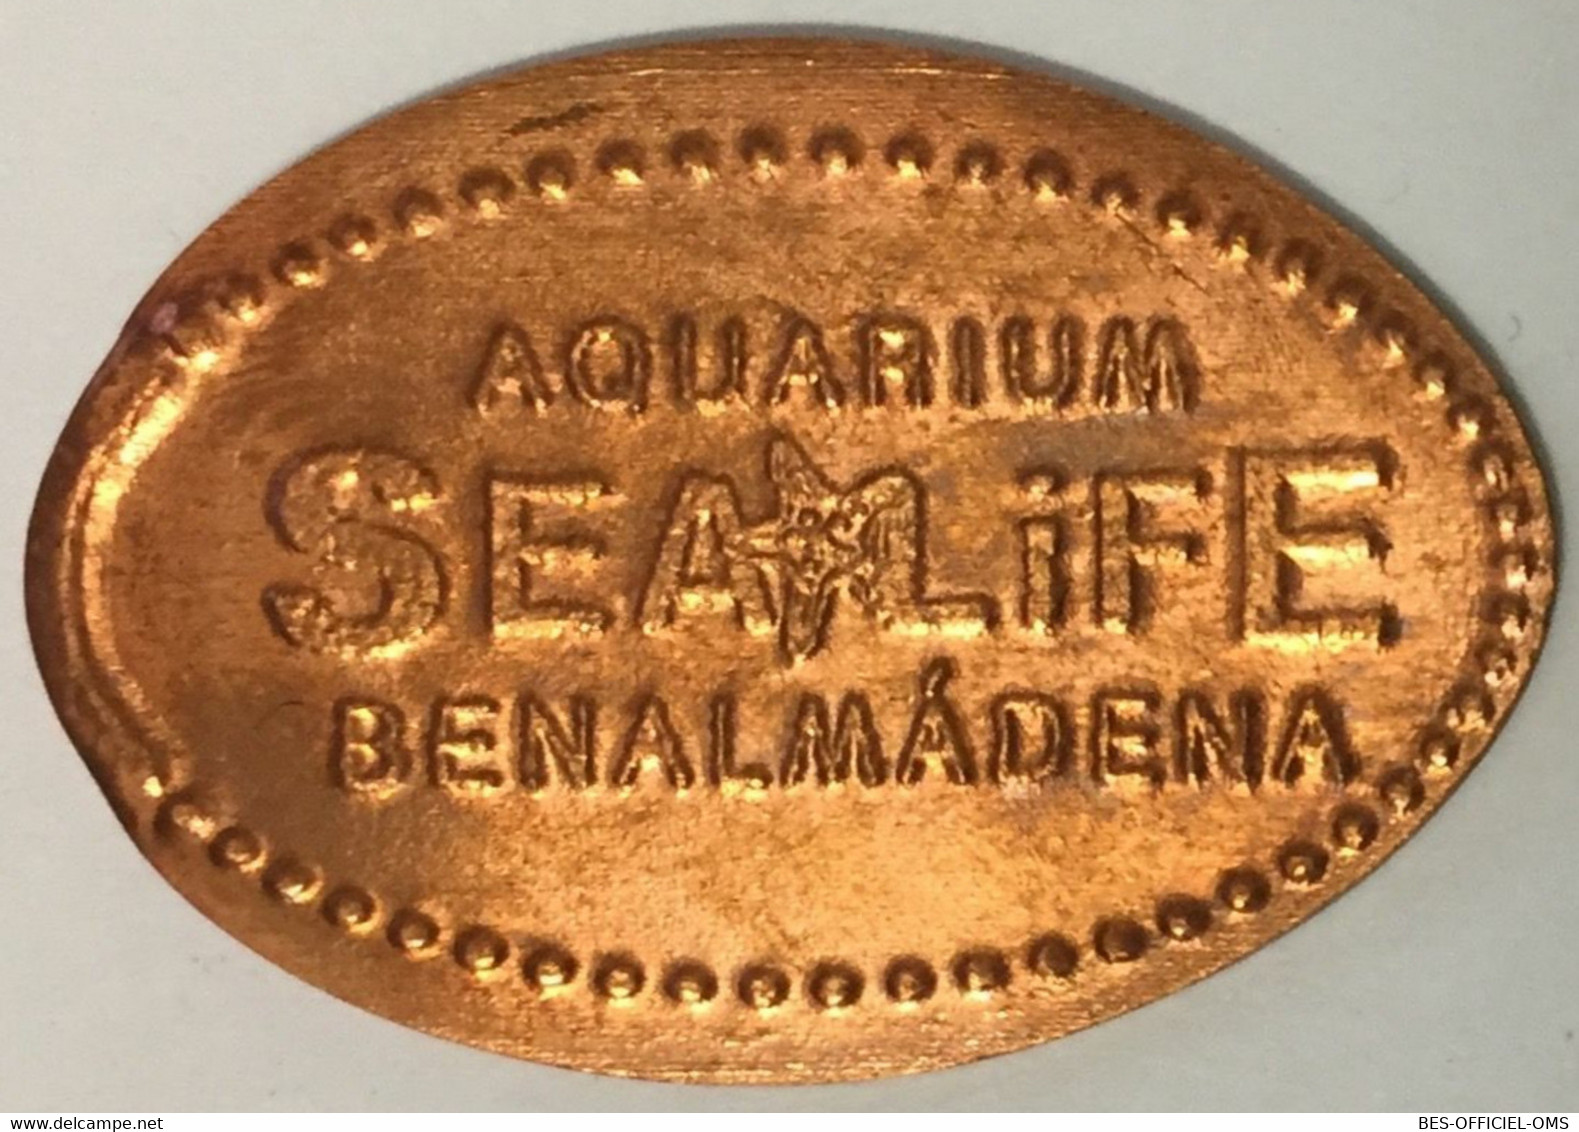 ESPAGNE AQUARIUM SEA LIFE BENALMÀDENA PIÈCE ÉCRASÉE ELONGATED COIN MEDAILLE TOURISTIQUE MEDALS TOKENS PIÈCE MONNAIE - Monete Allungate (penny Souvenirs)